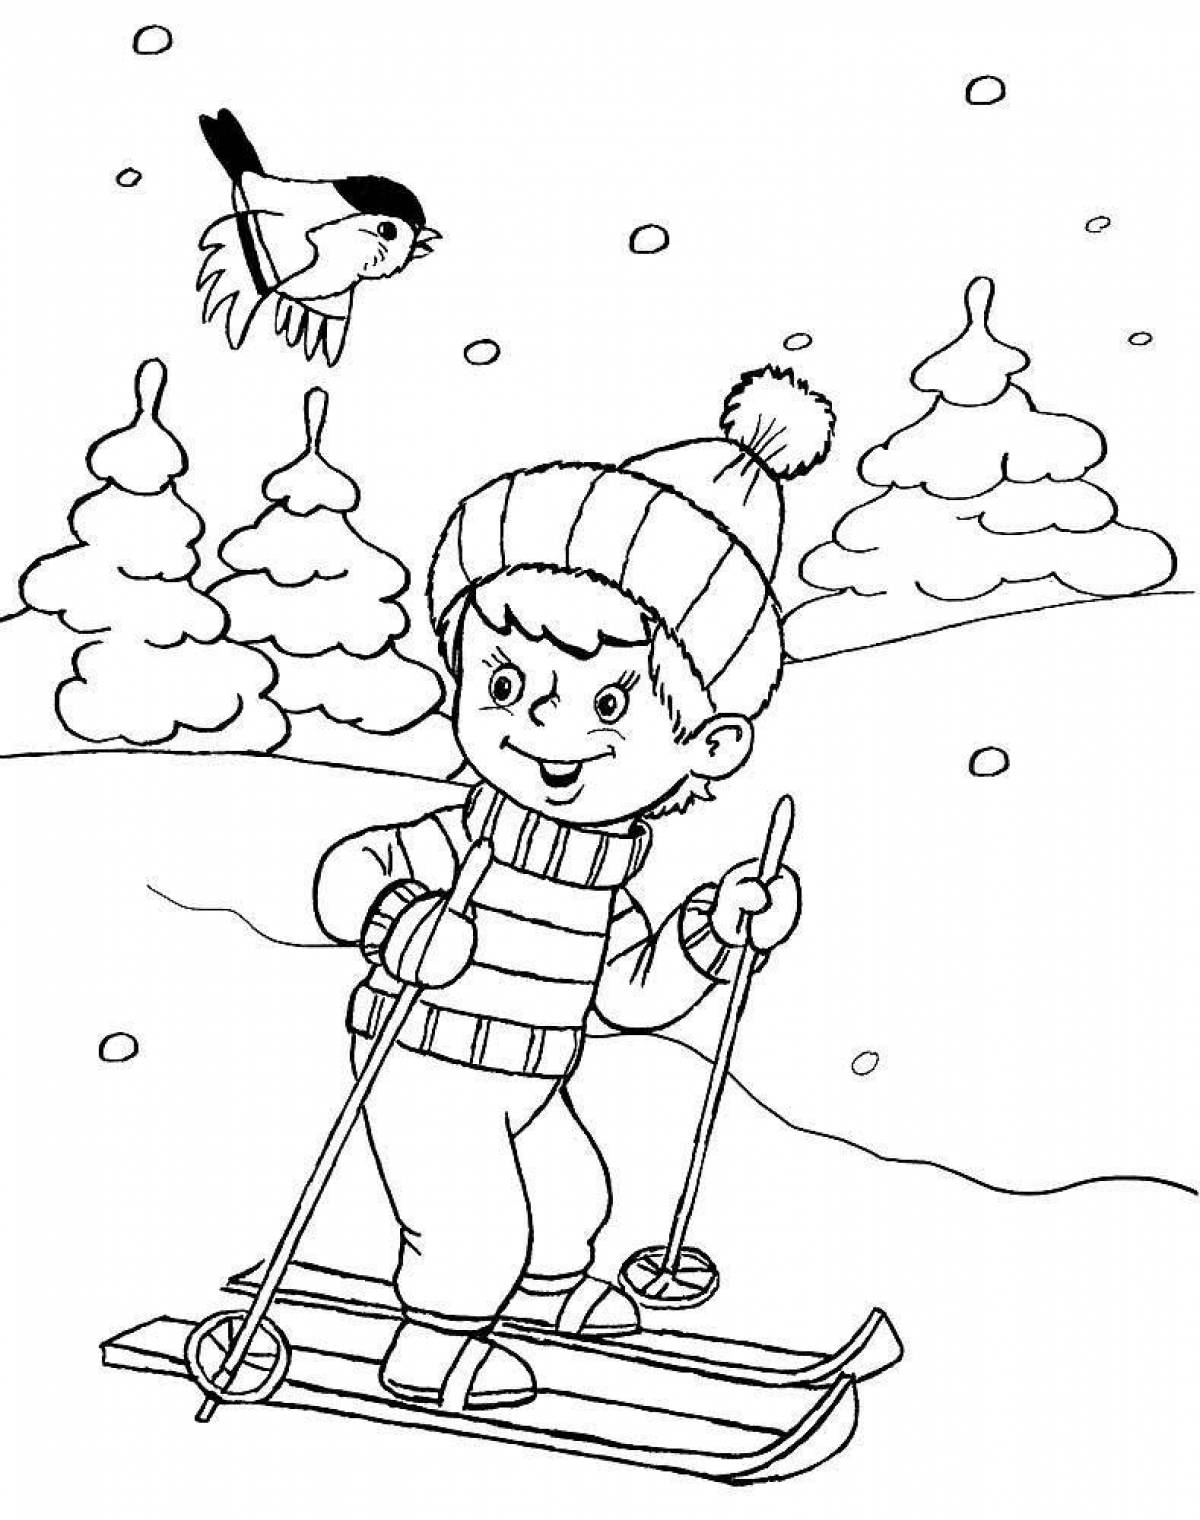 Лыжник - Летающий лыжник, трюк это оригинальный рисунок